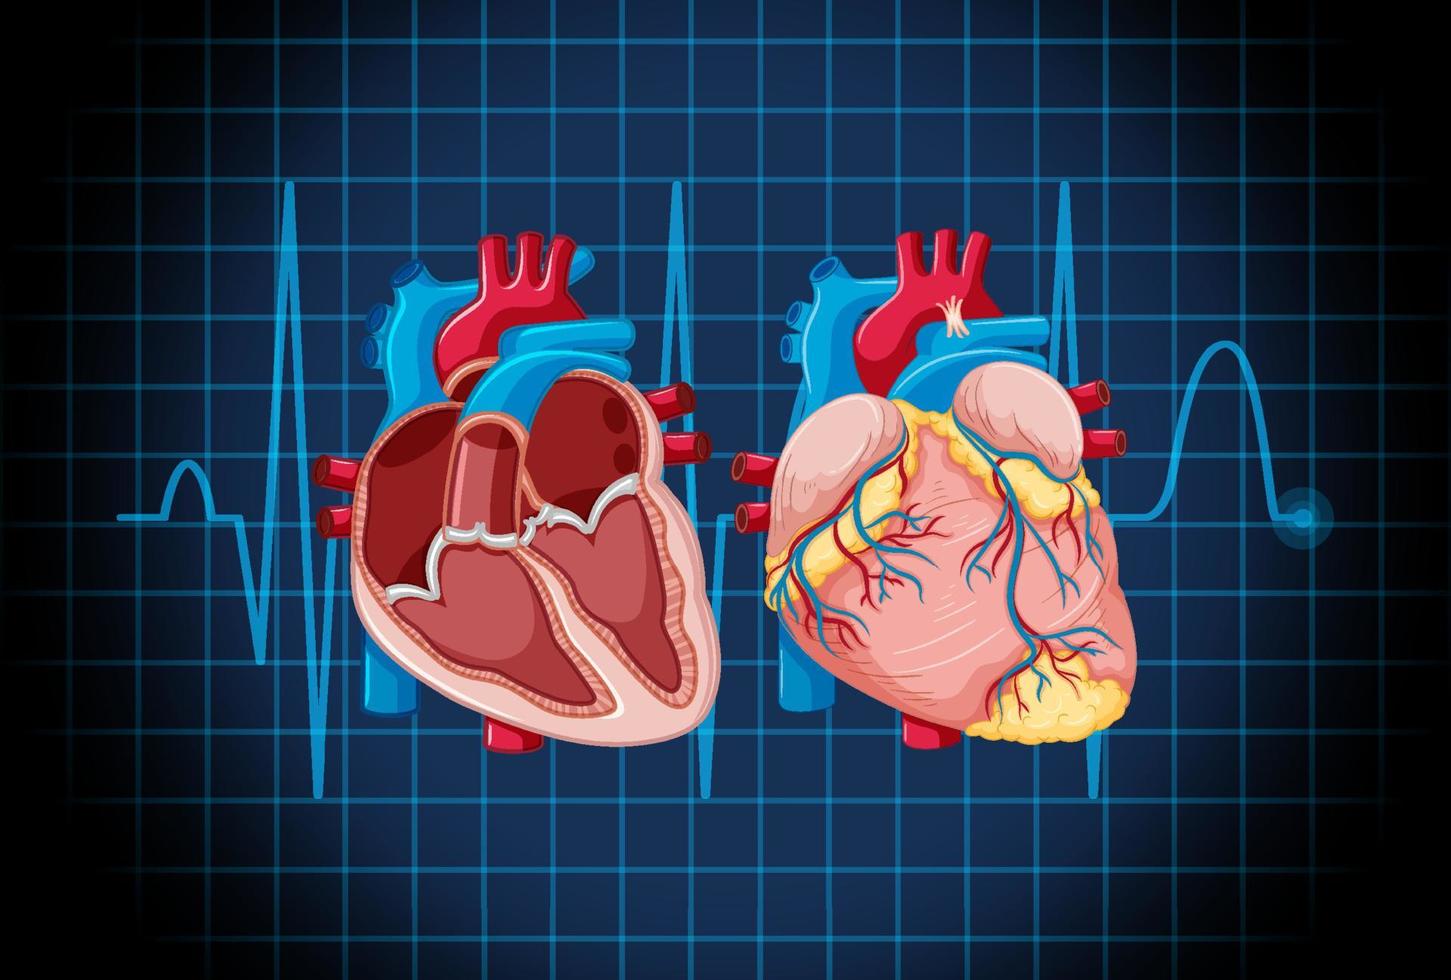 órgano interno humano con corazón vector